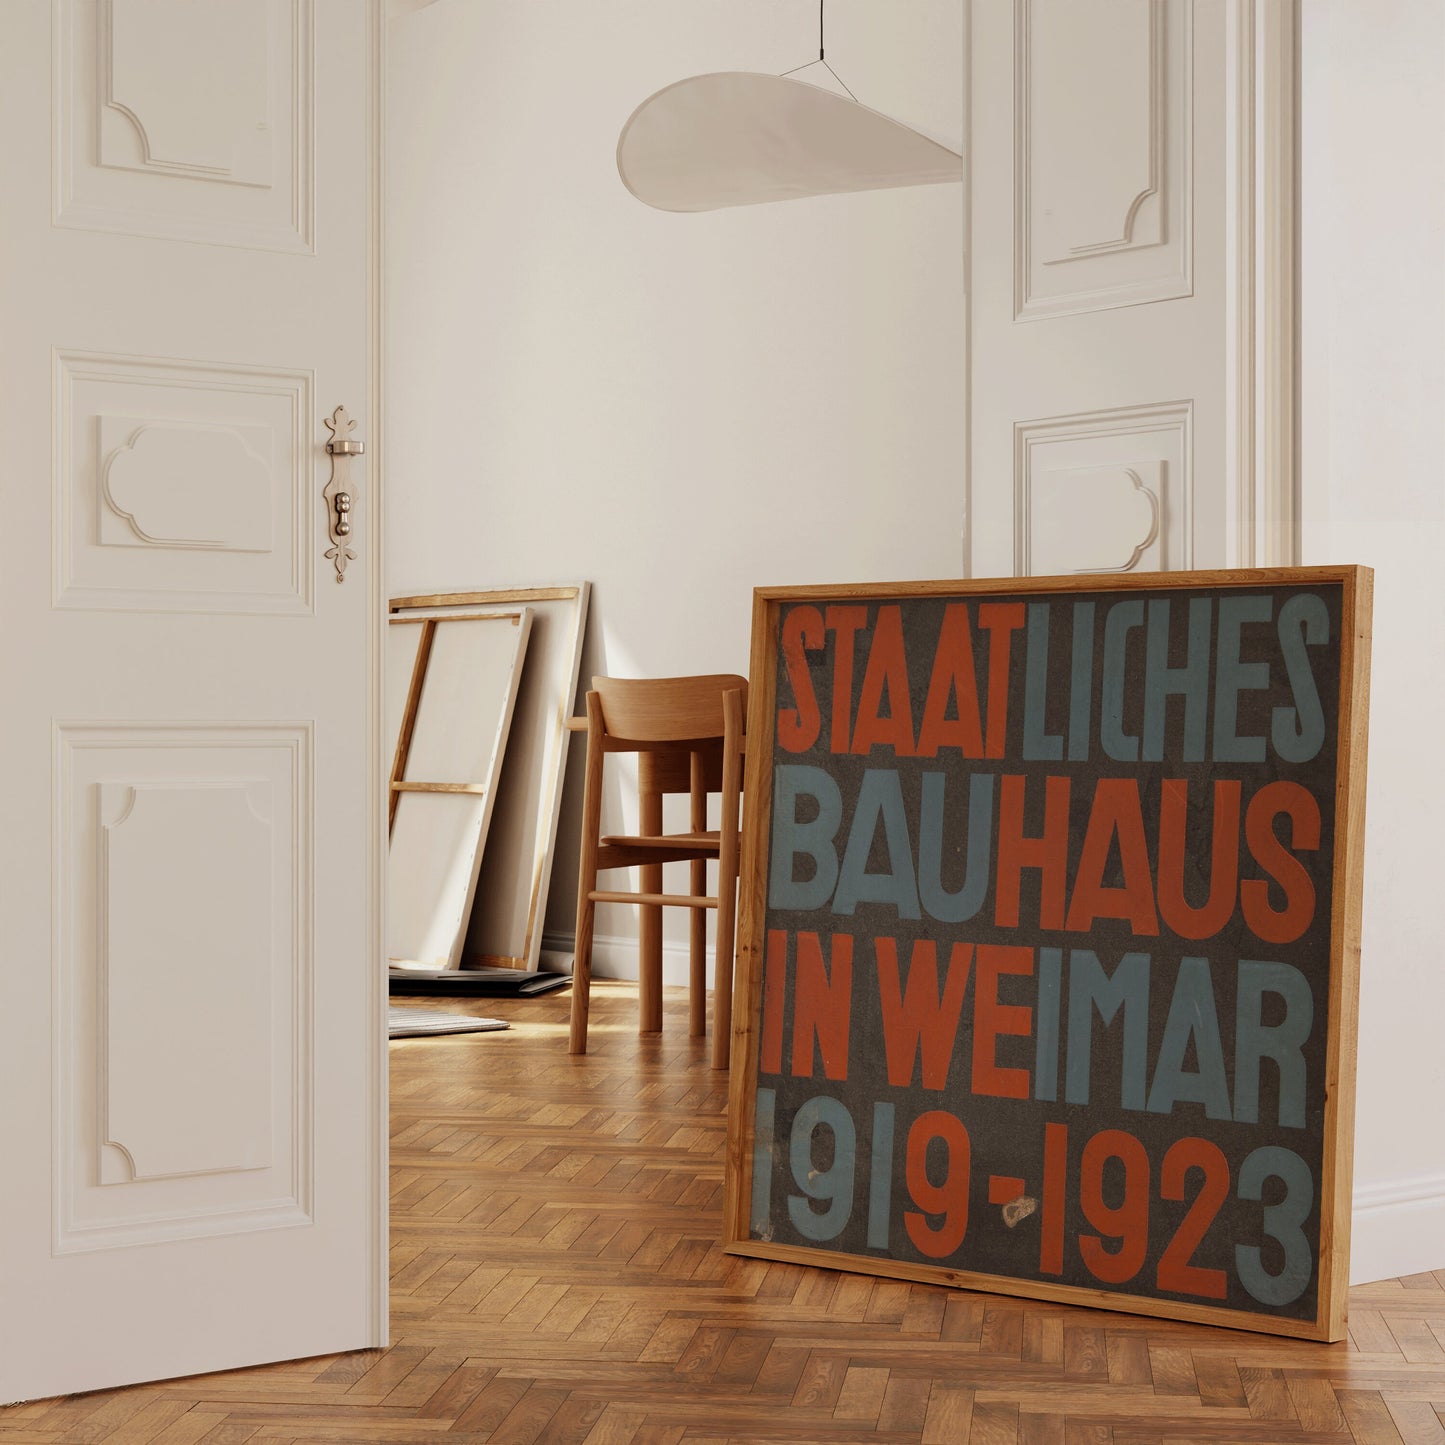 Vintage Staatliches Bauhaus Poster Mid-Century Modern